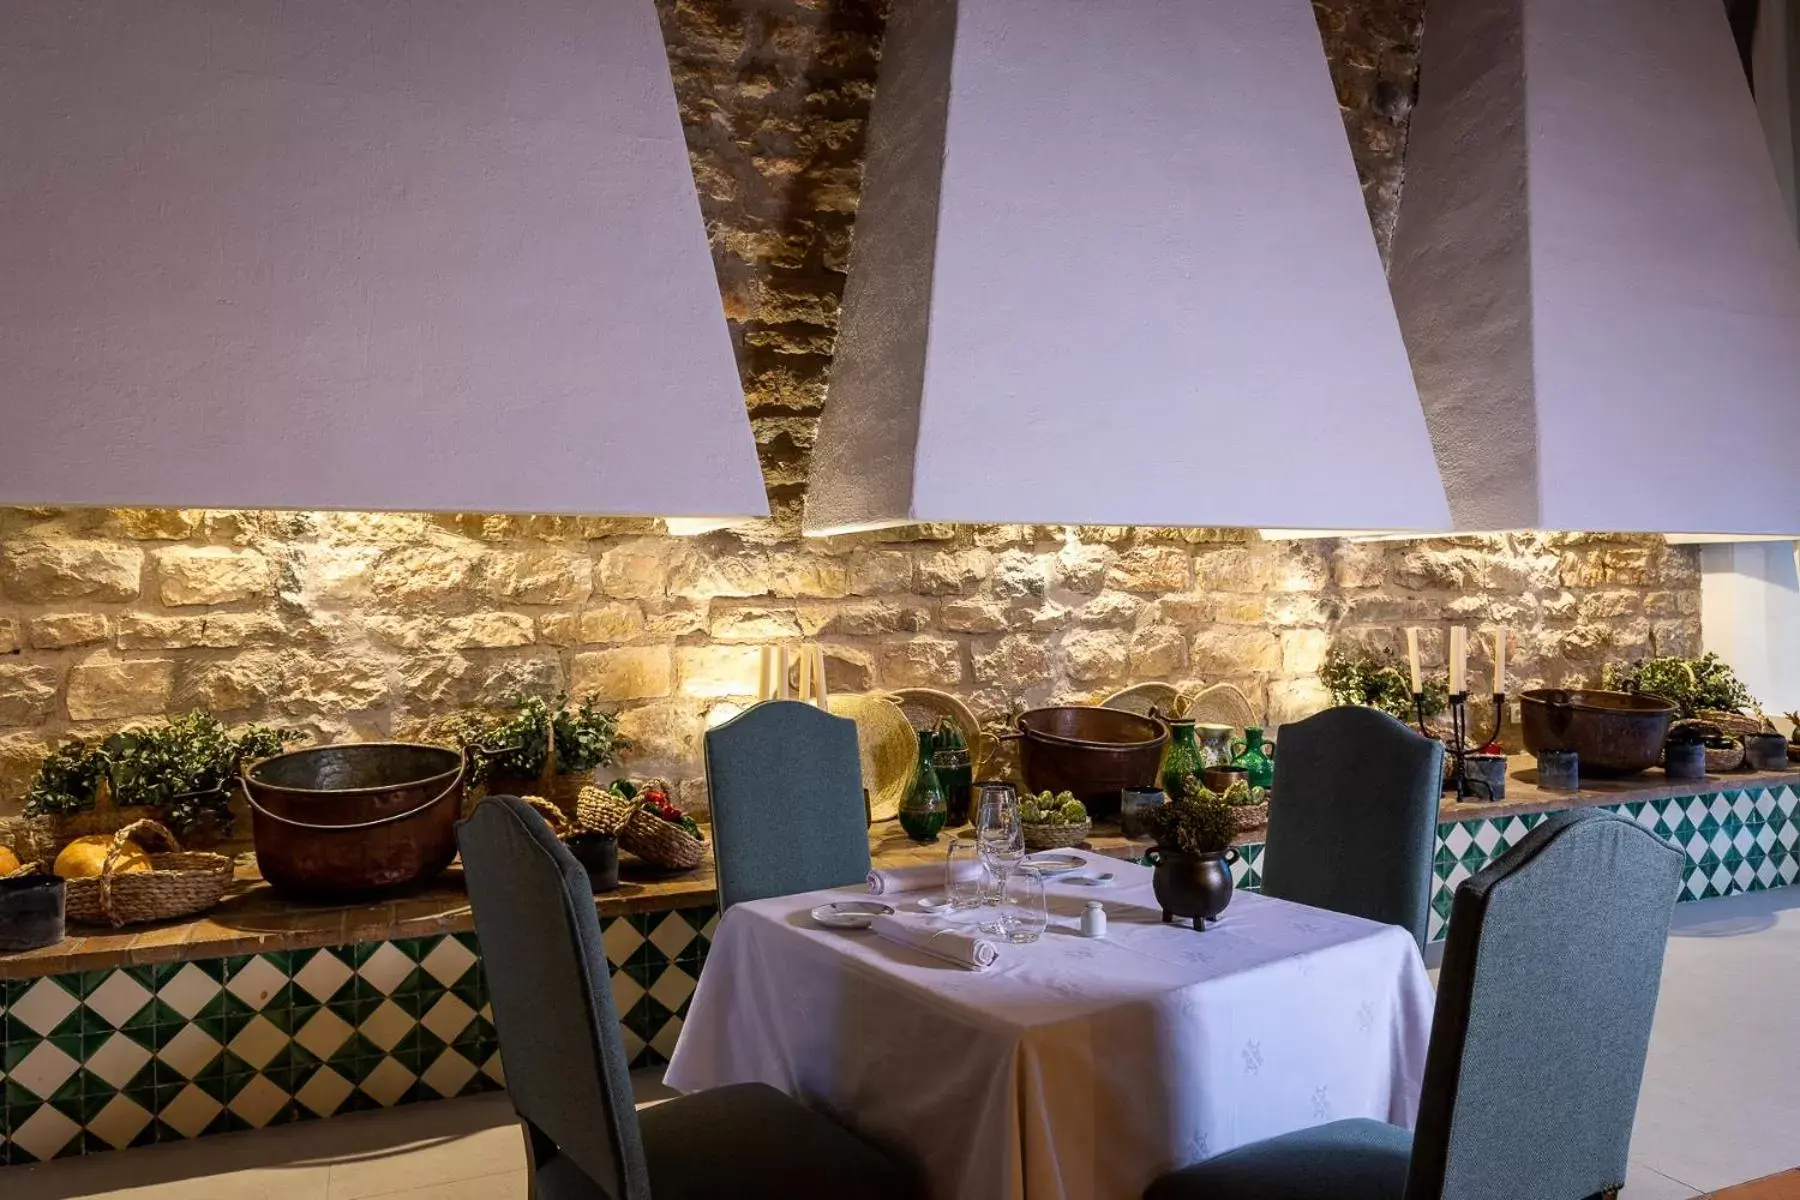 Restaurant/Places to Eat in Parador de Jaén